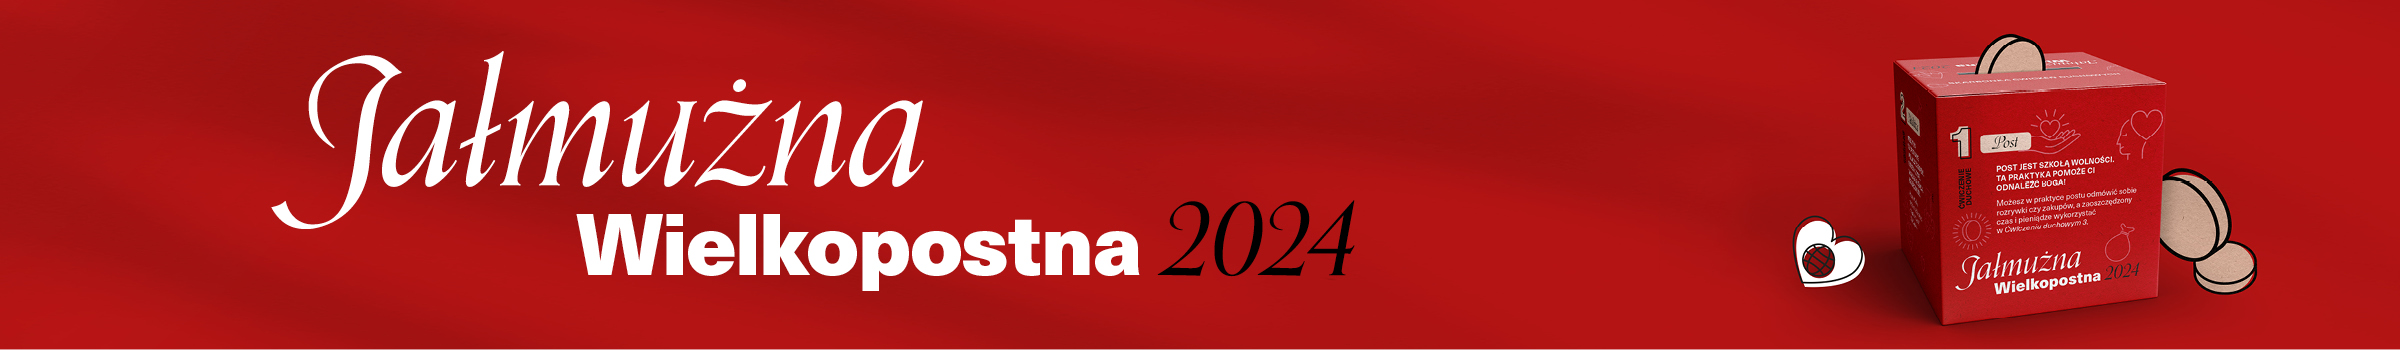 Jalmuzna 2024 Banner 2400x350